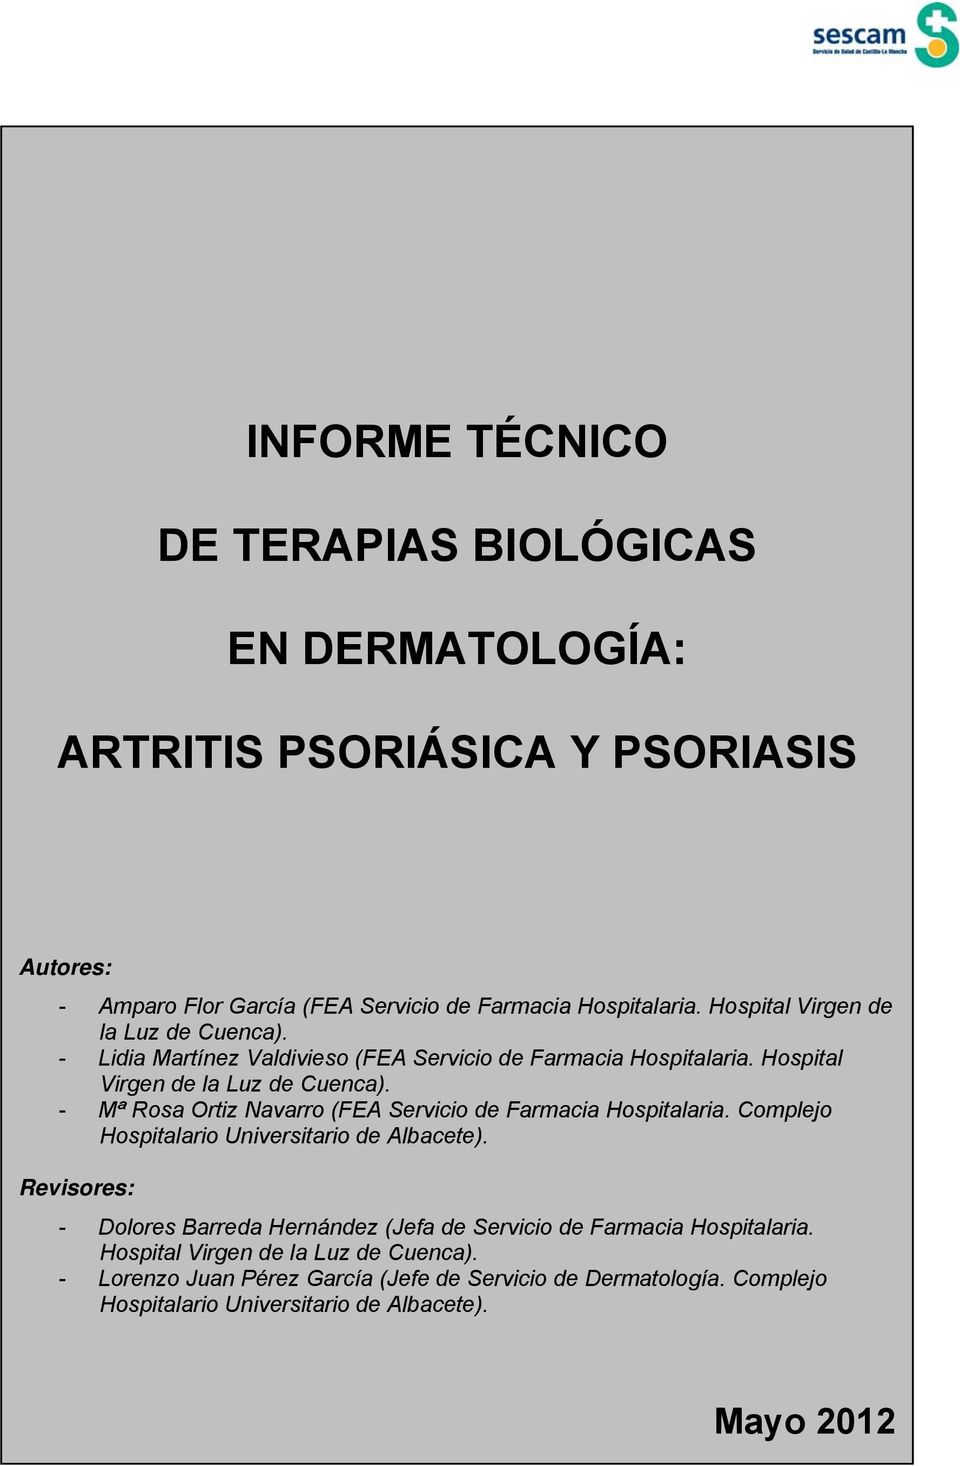 Mª Rosa Ortiz Navarro (FEA Servicio de Farmacia Hospitalaria. Complejo Hospitalario Universitario de Albacete).